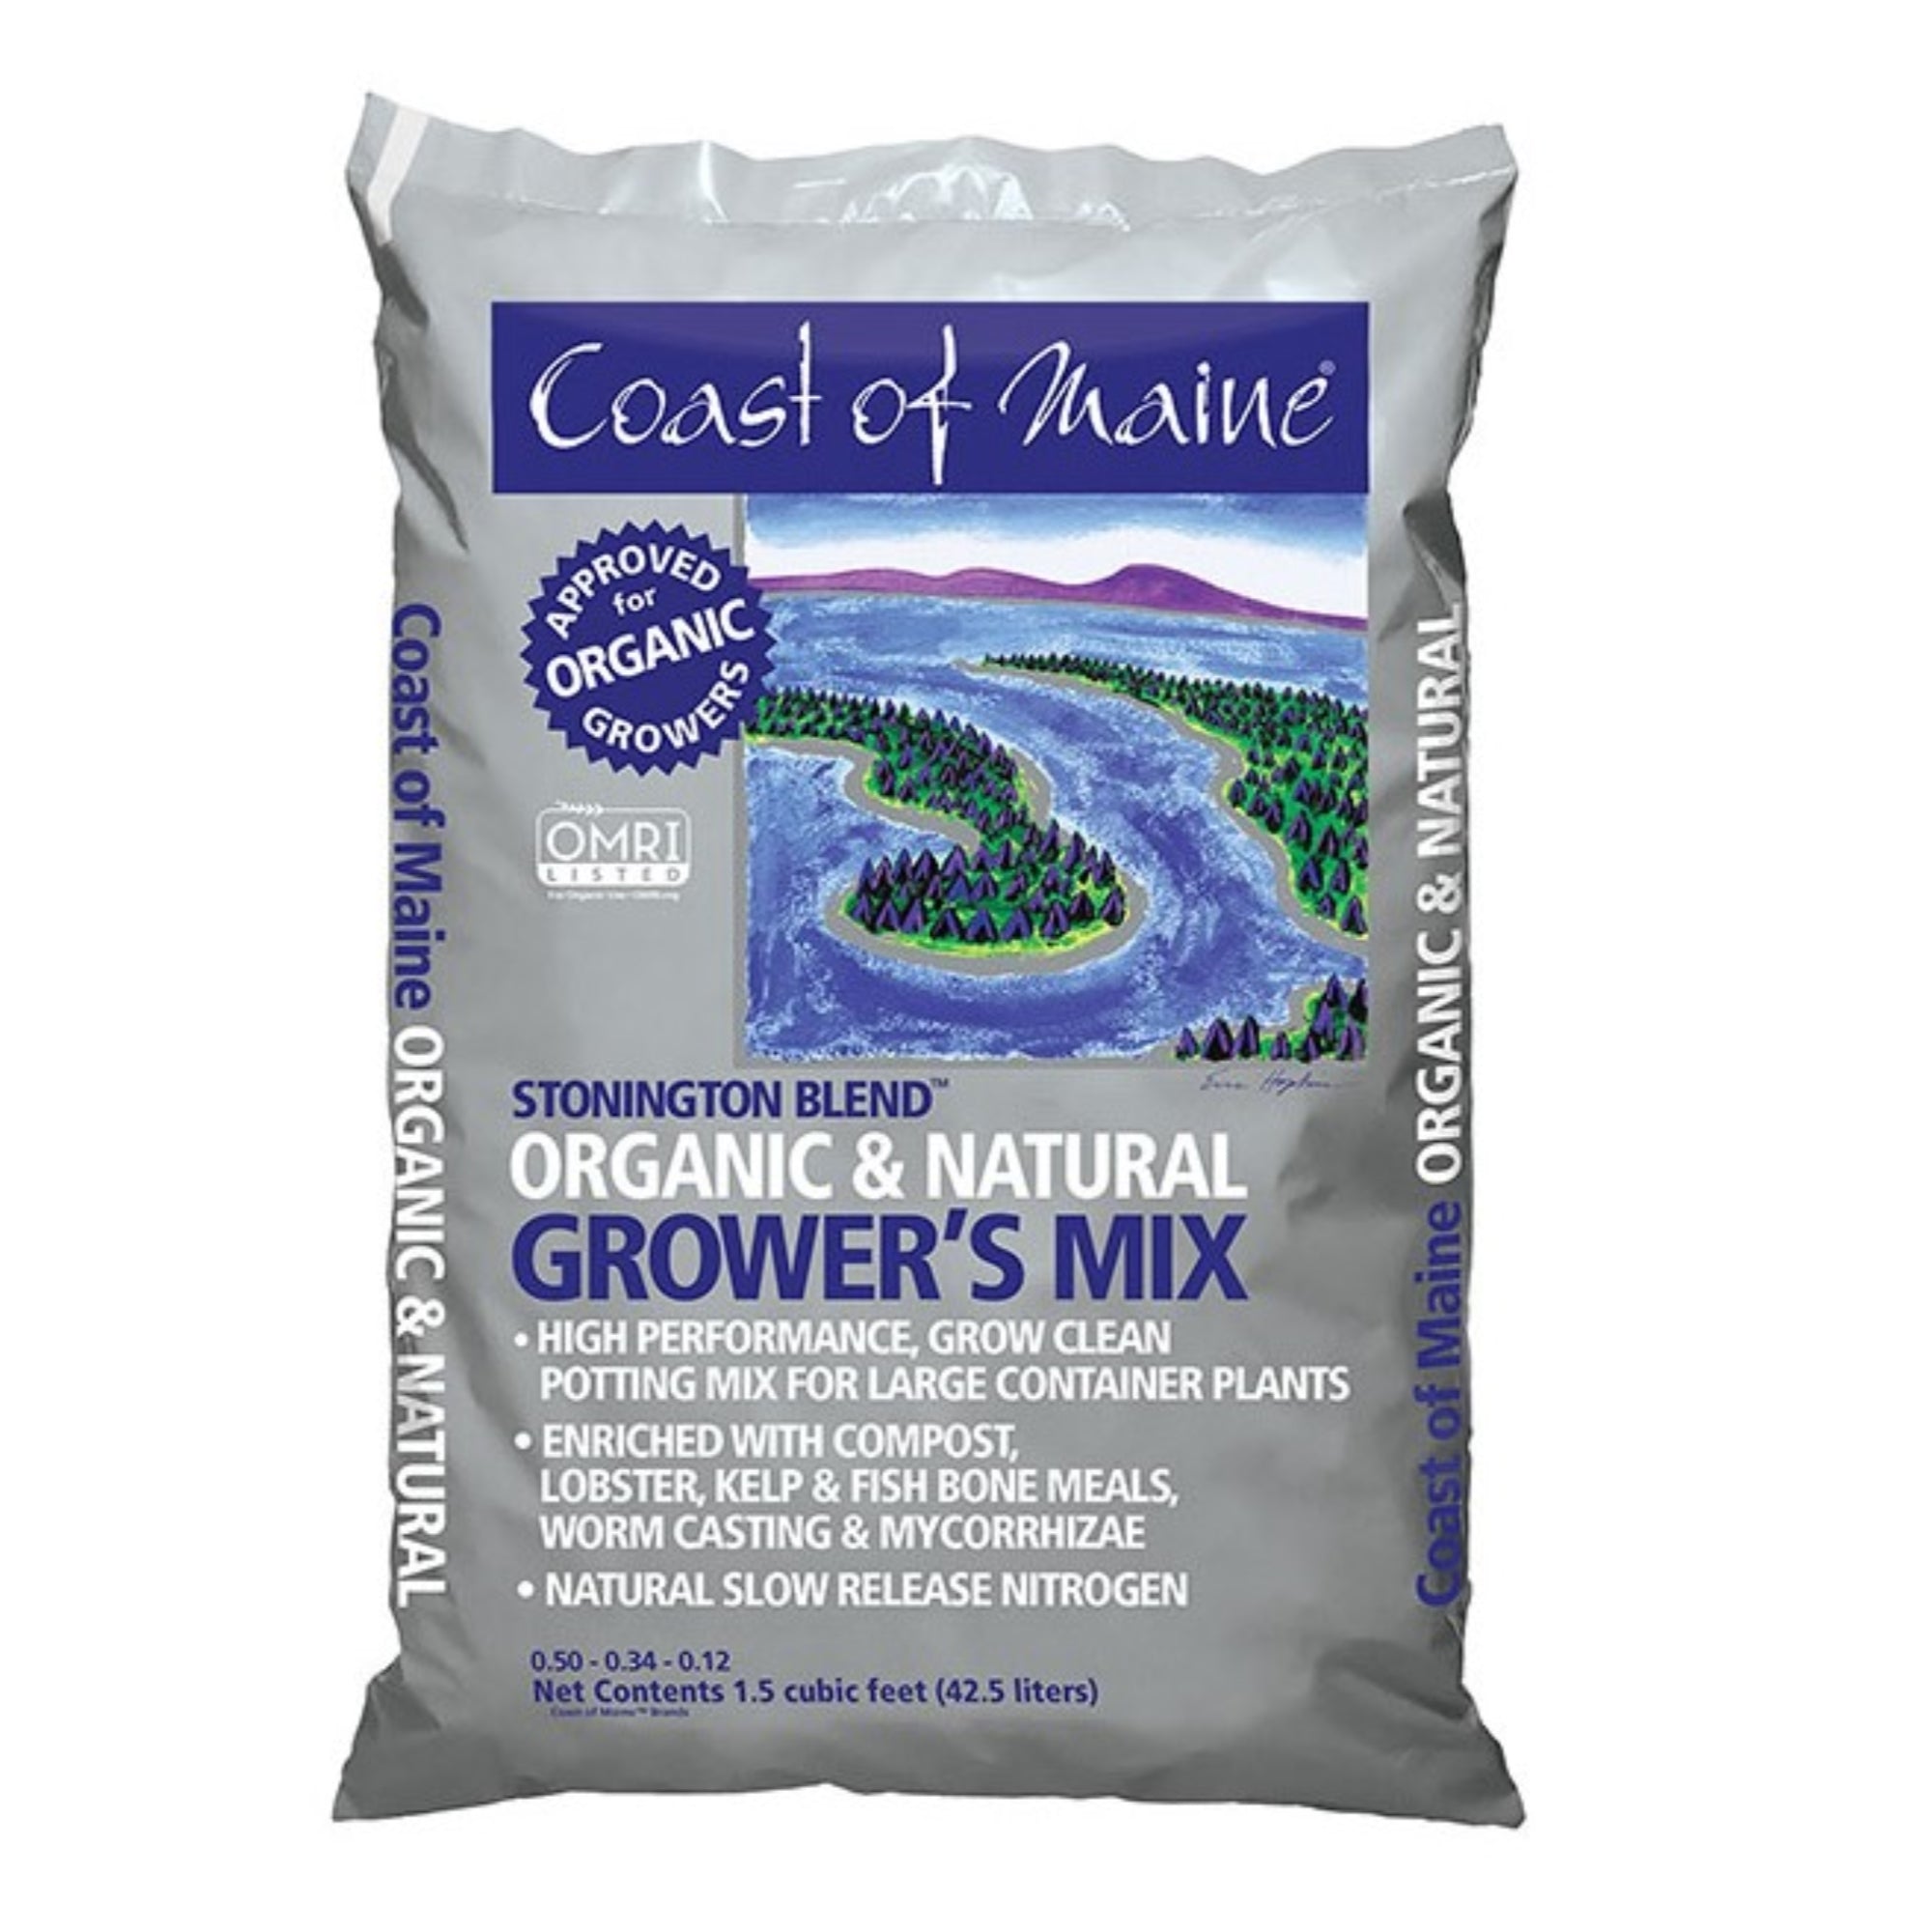 Coast of Maine 5-2-4 Stonington Blend Organic & Natural Grower’s Mix, 1.5 cu ft